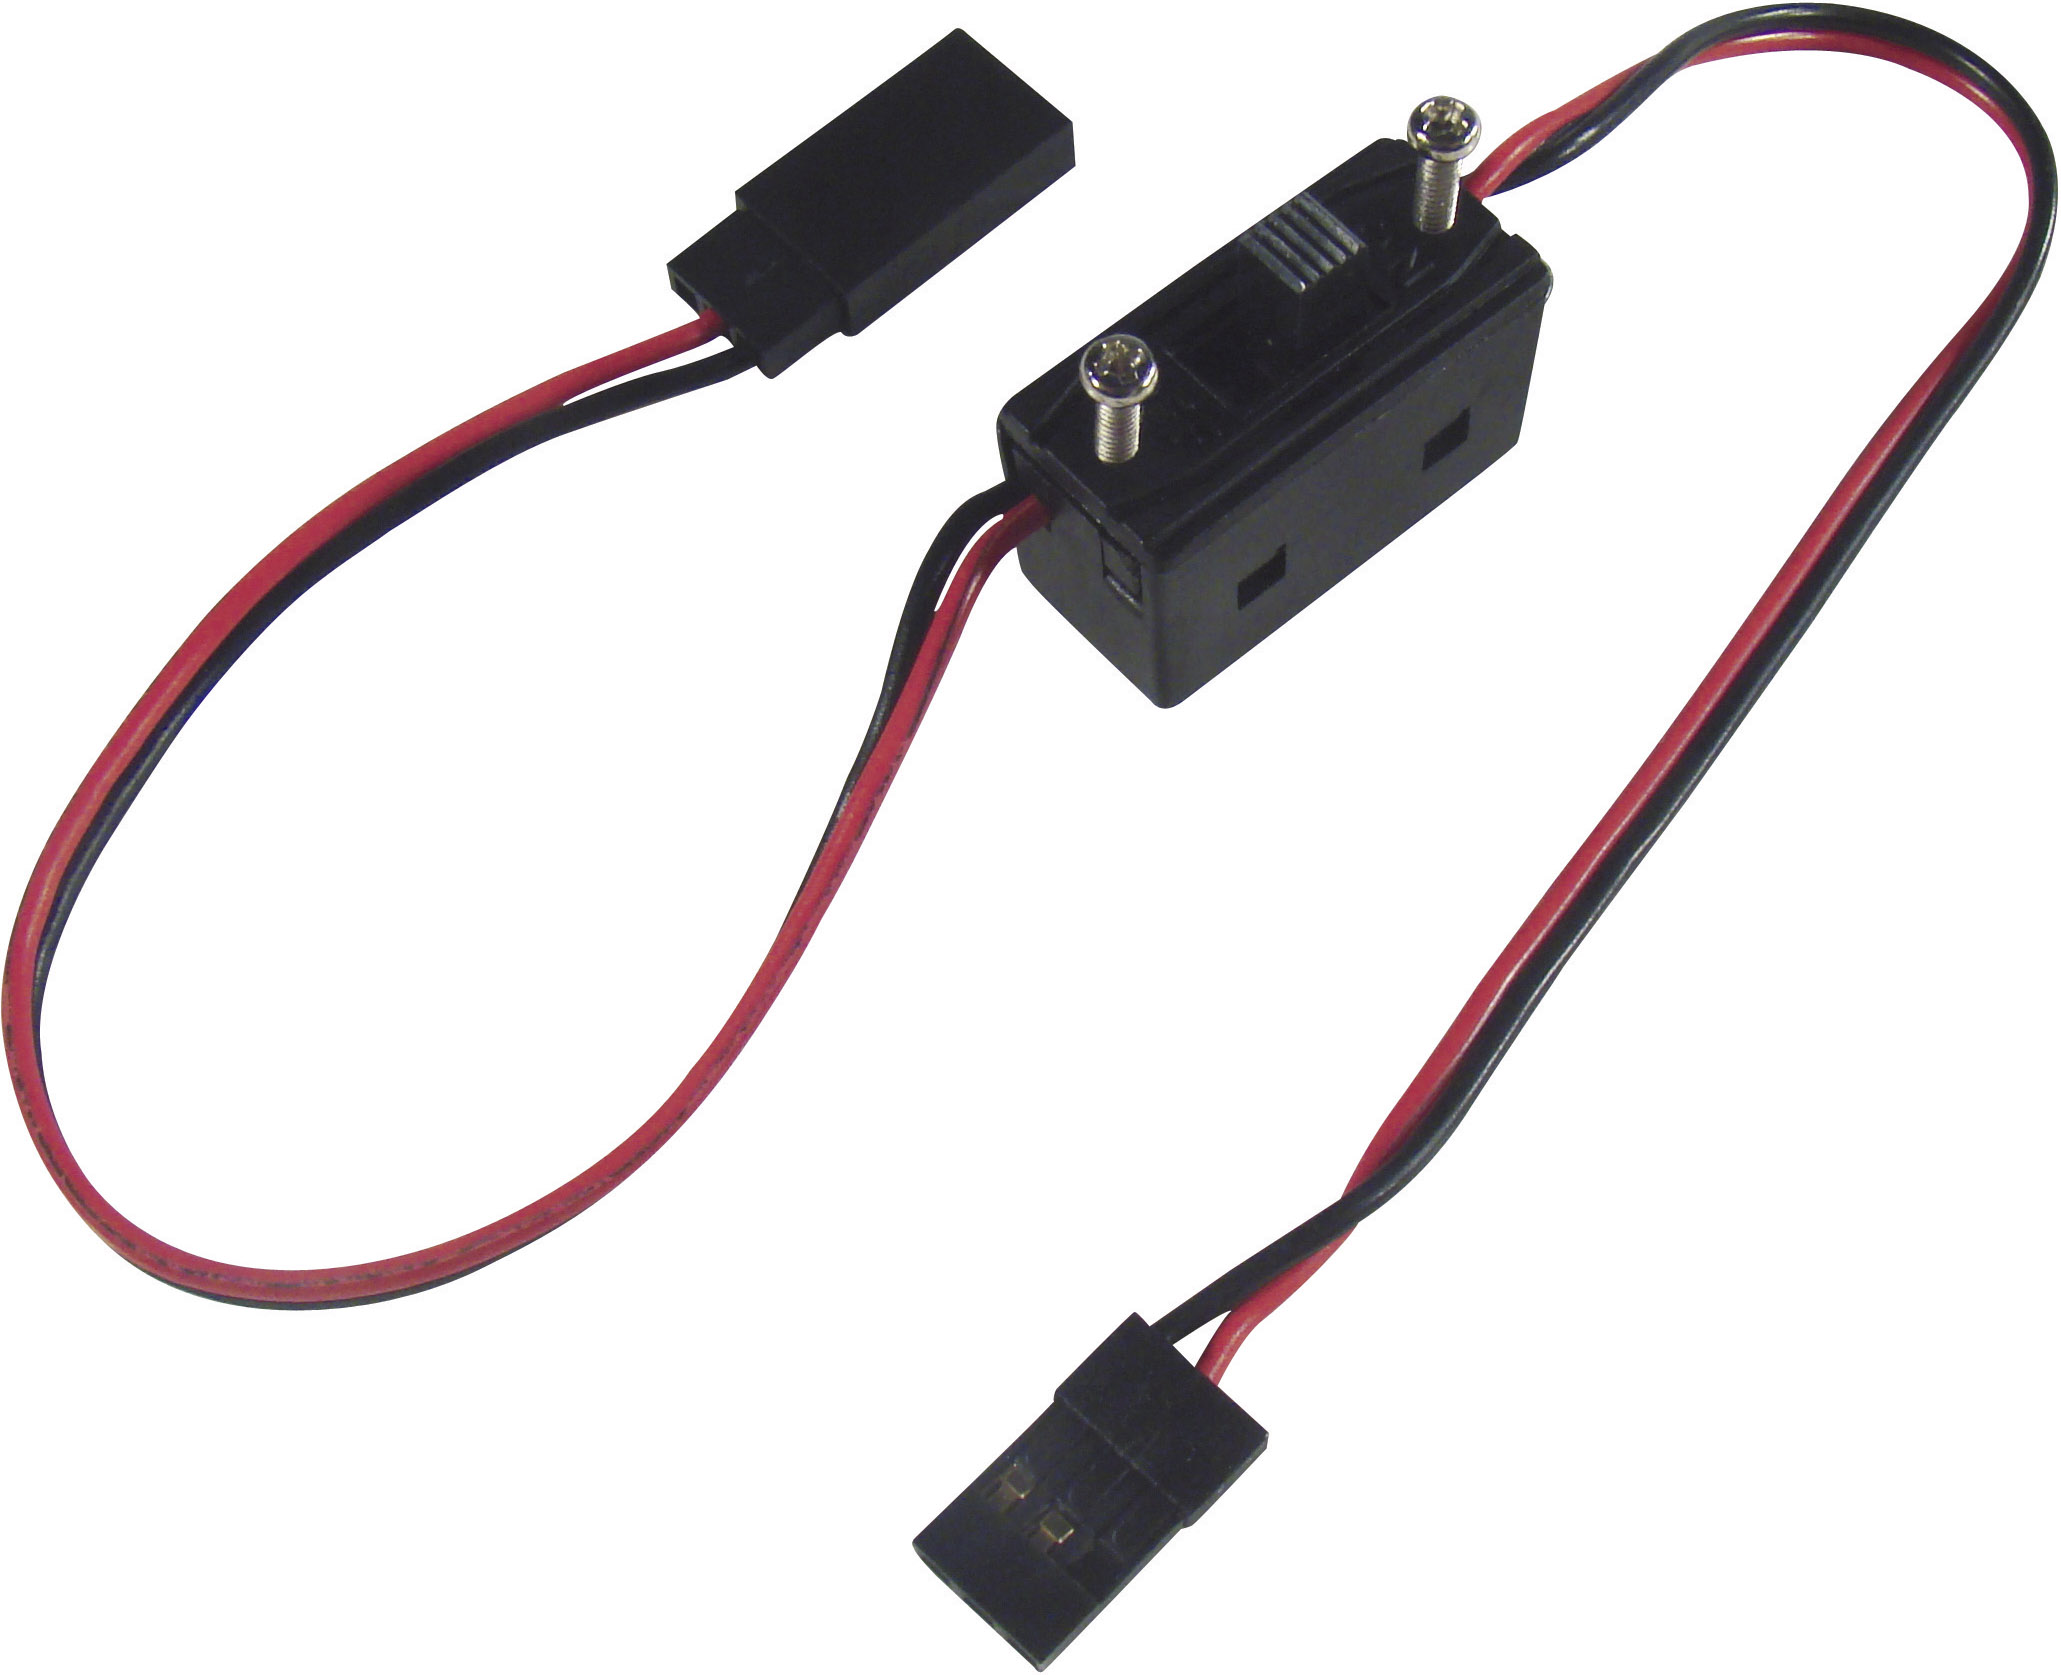 Câble avec interrupteur On/Off standard Modelcraft 223895 [1x JR mâle - 1x JR femelle] 0.14 mm²